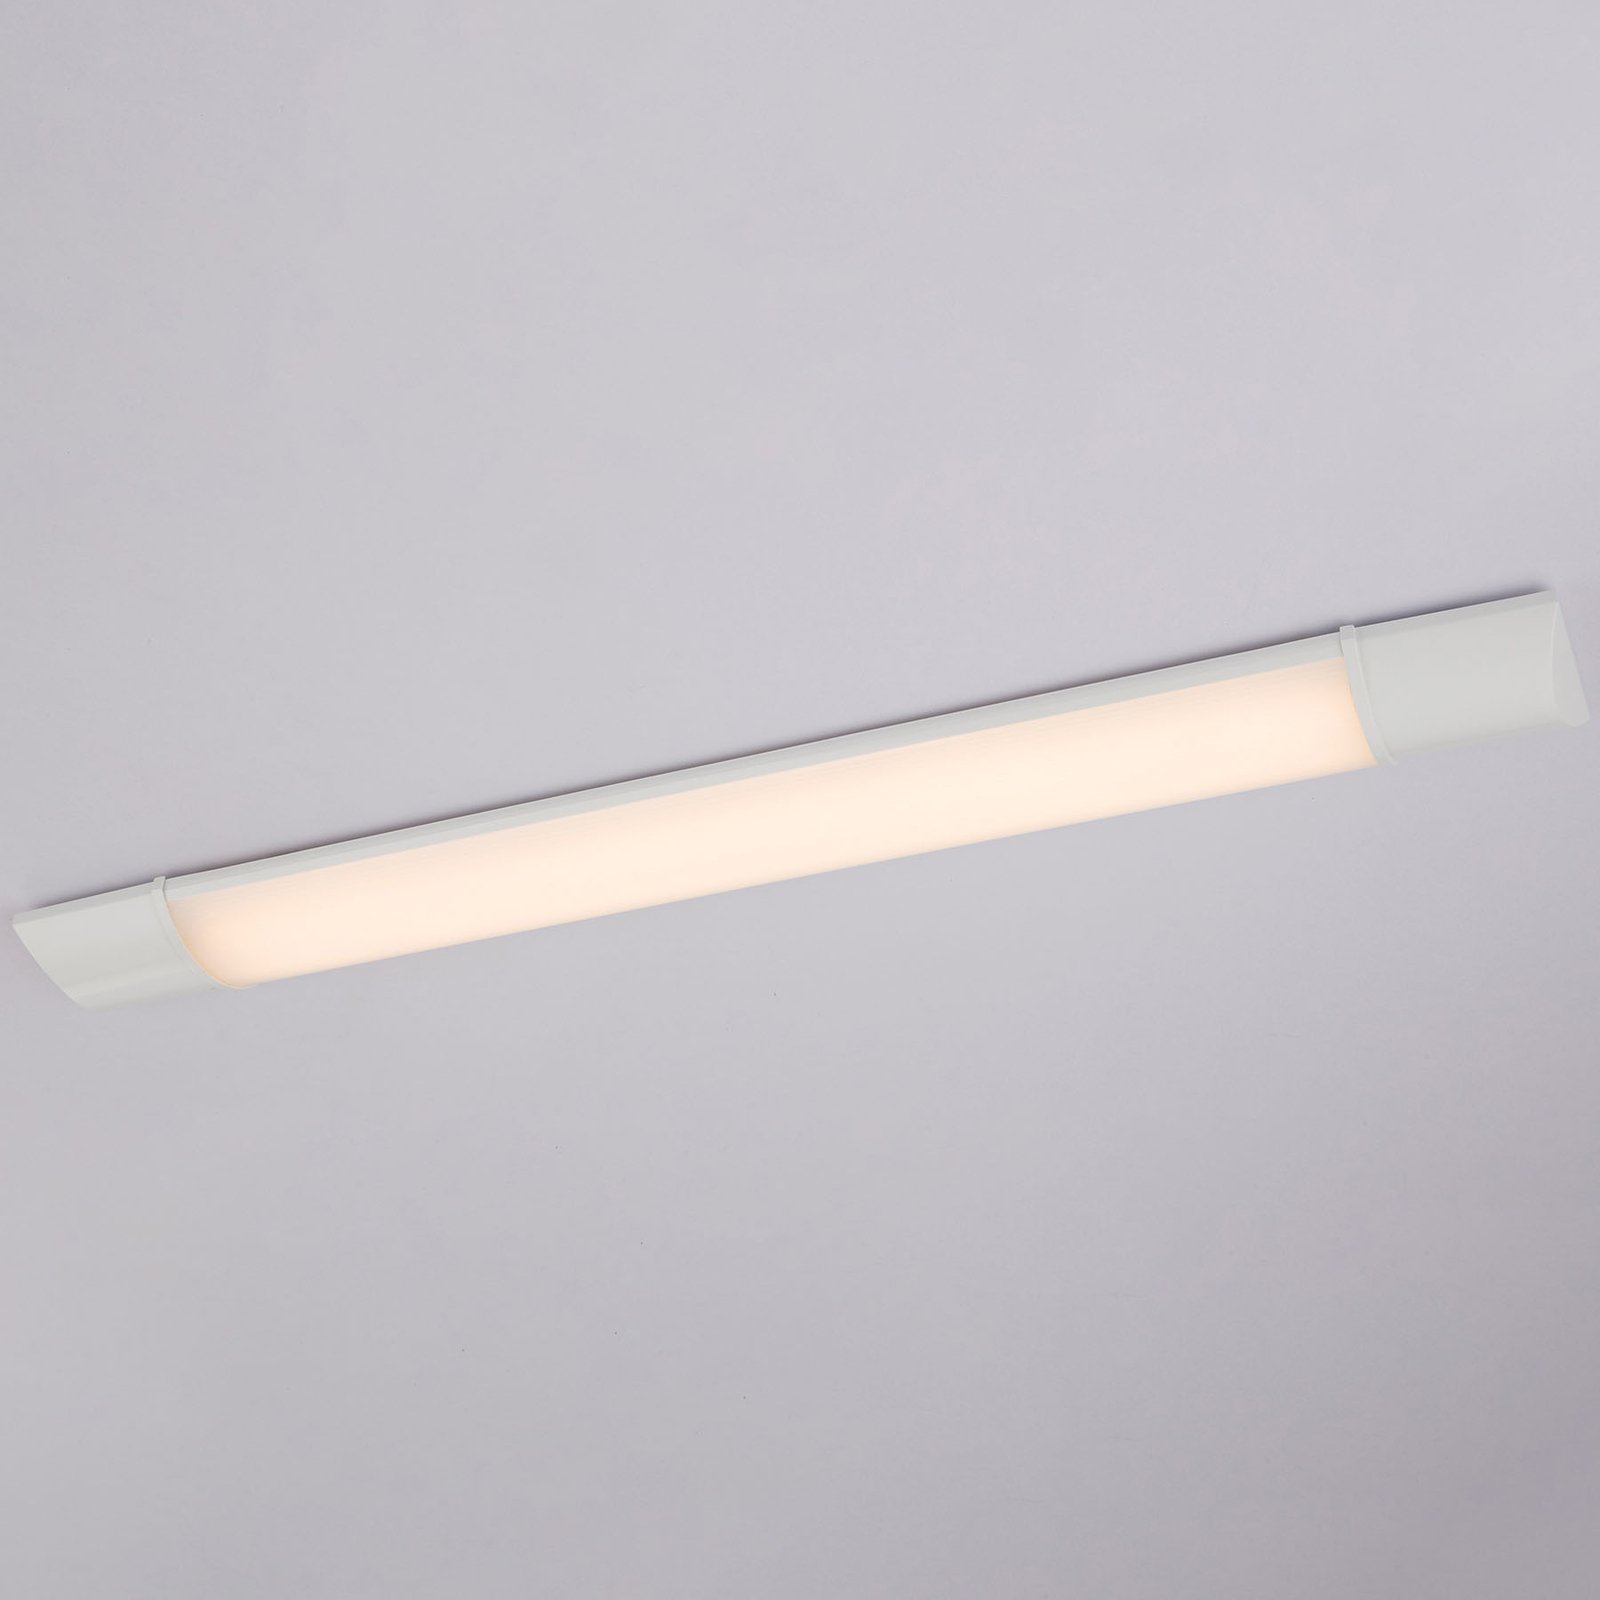 LED svetilo pod omarico Obara, IP20, dolžina 90 cm